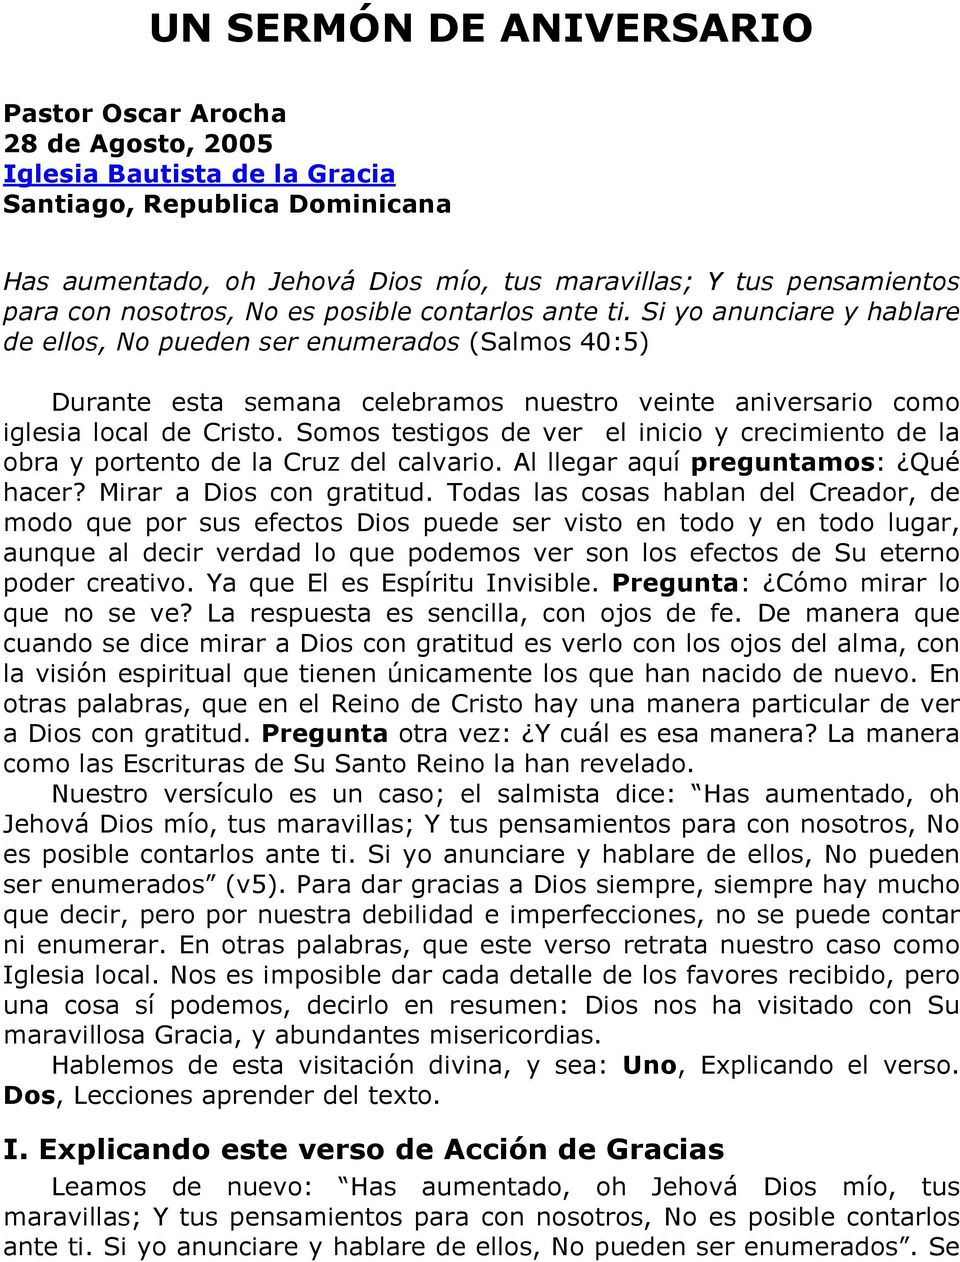 UN SERMÓN DE ANIVERSARIO - PDF Free Download